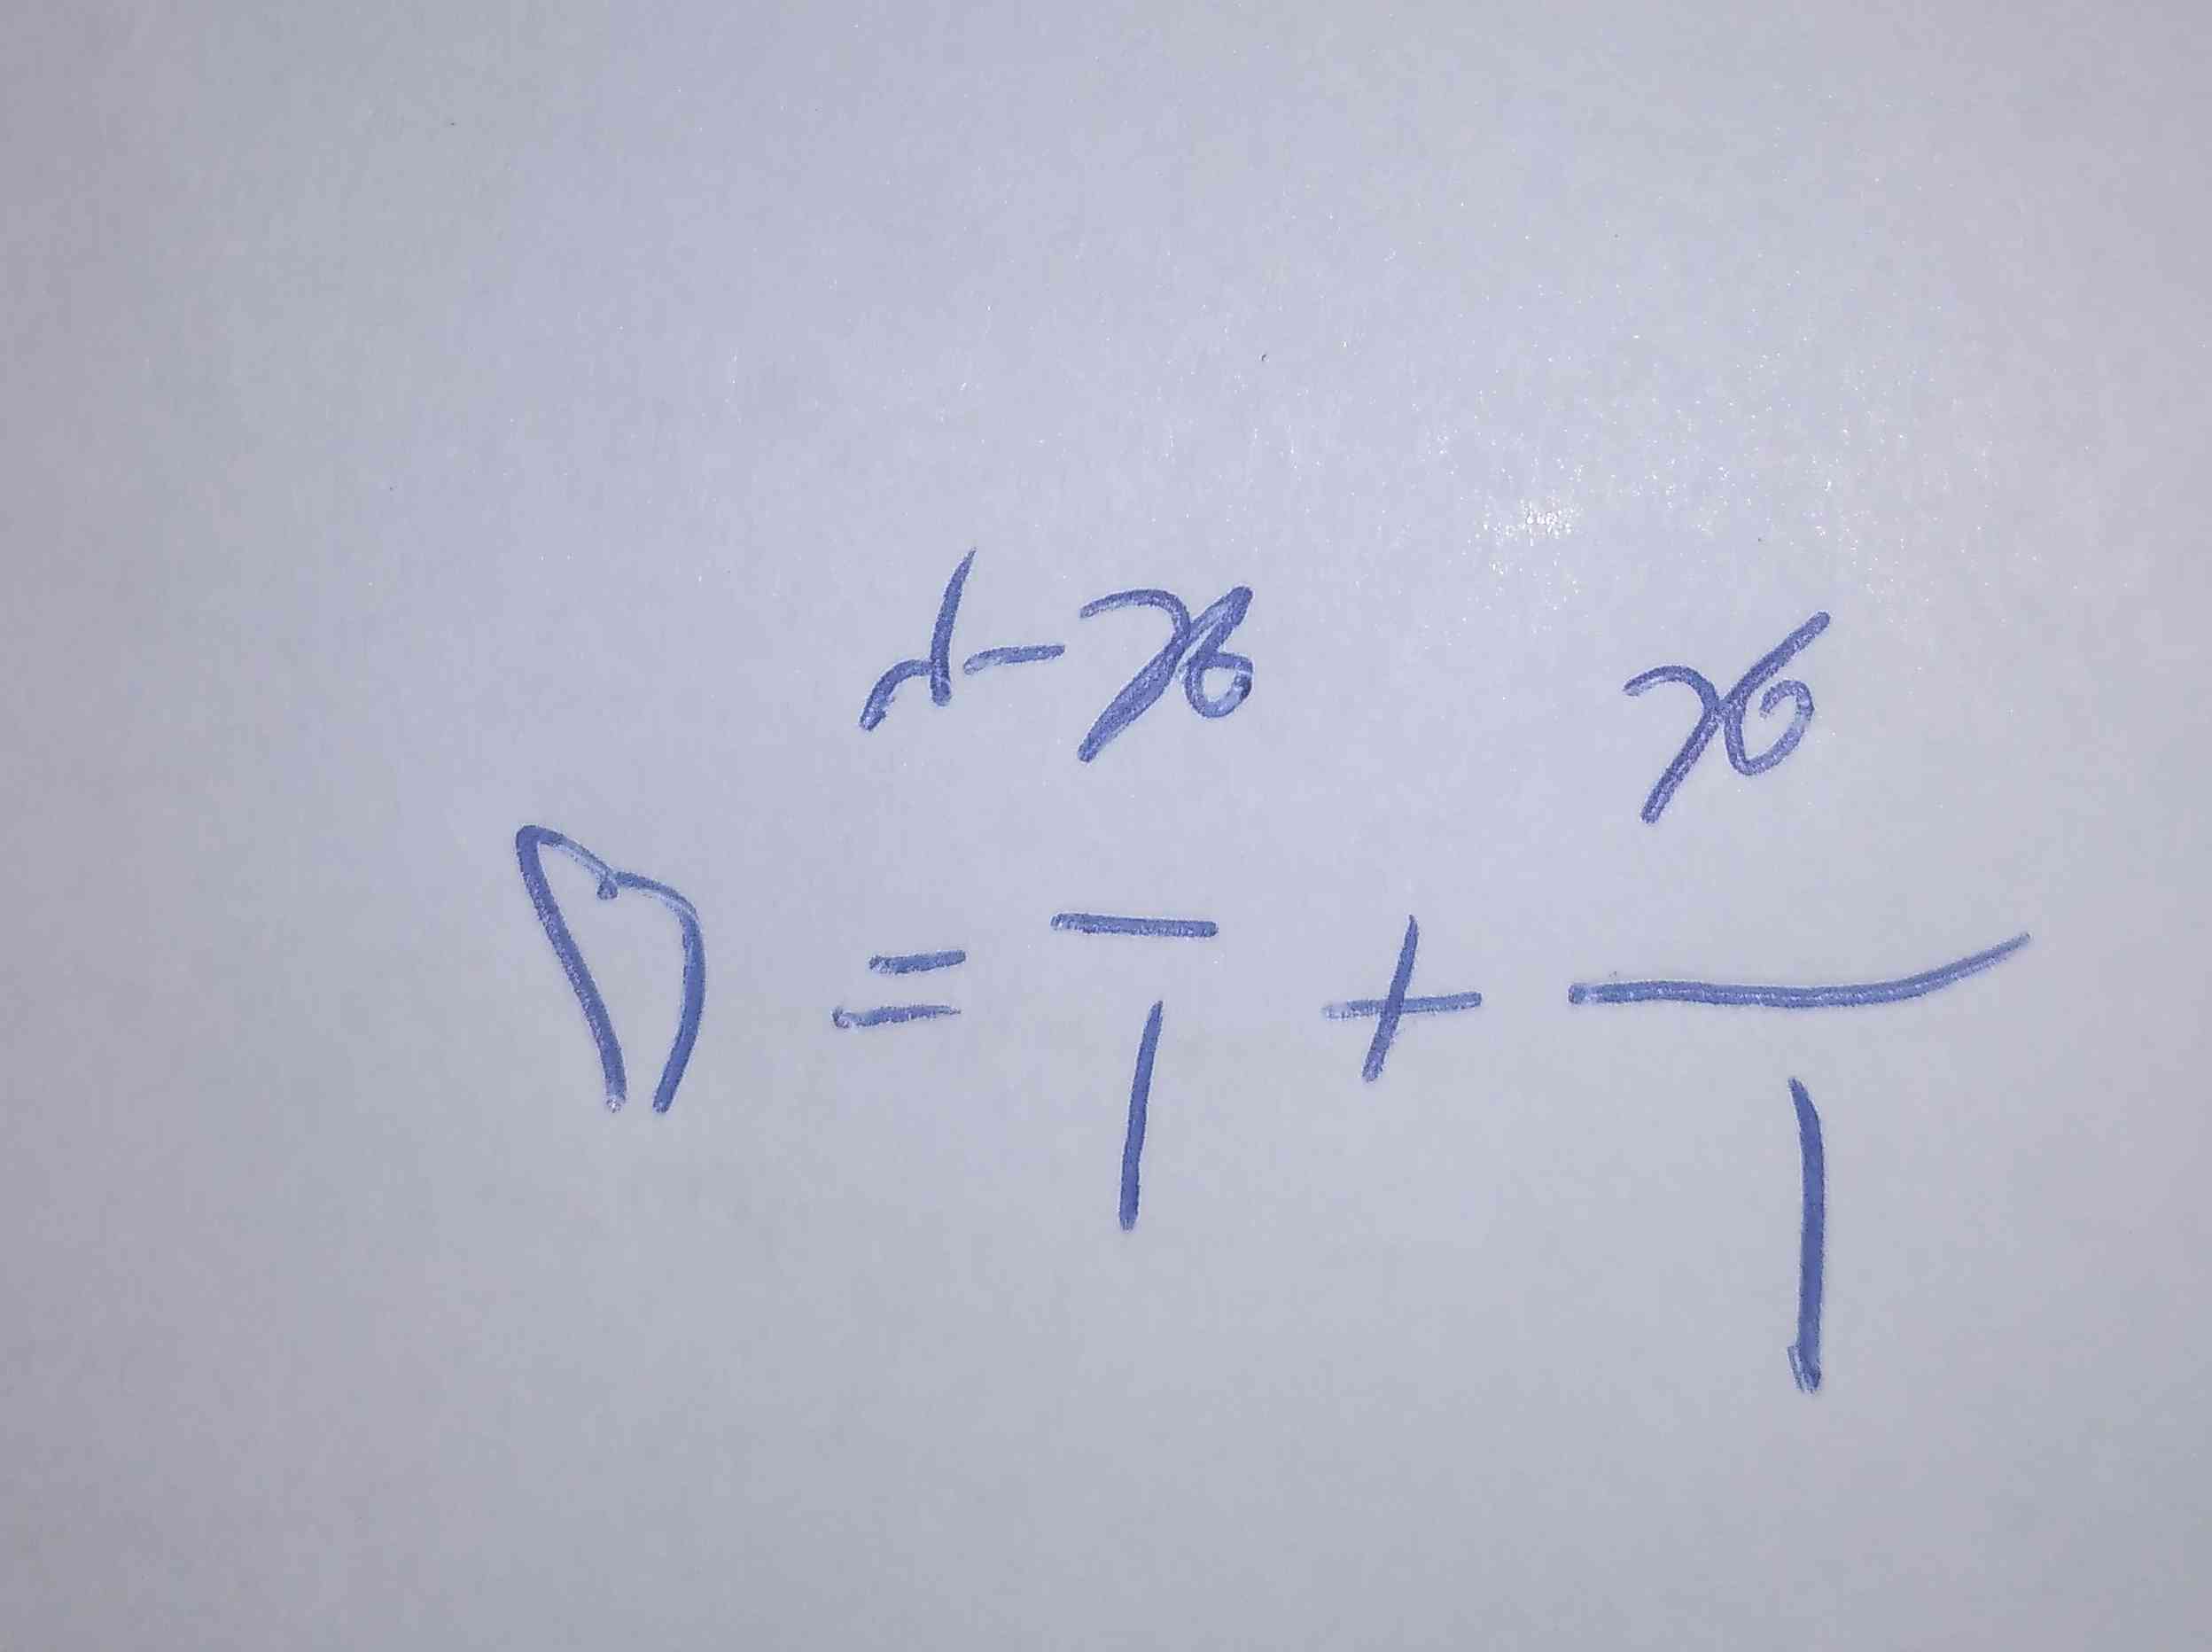 معادله  زیر را حل کنید
